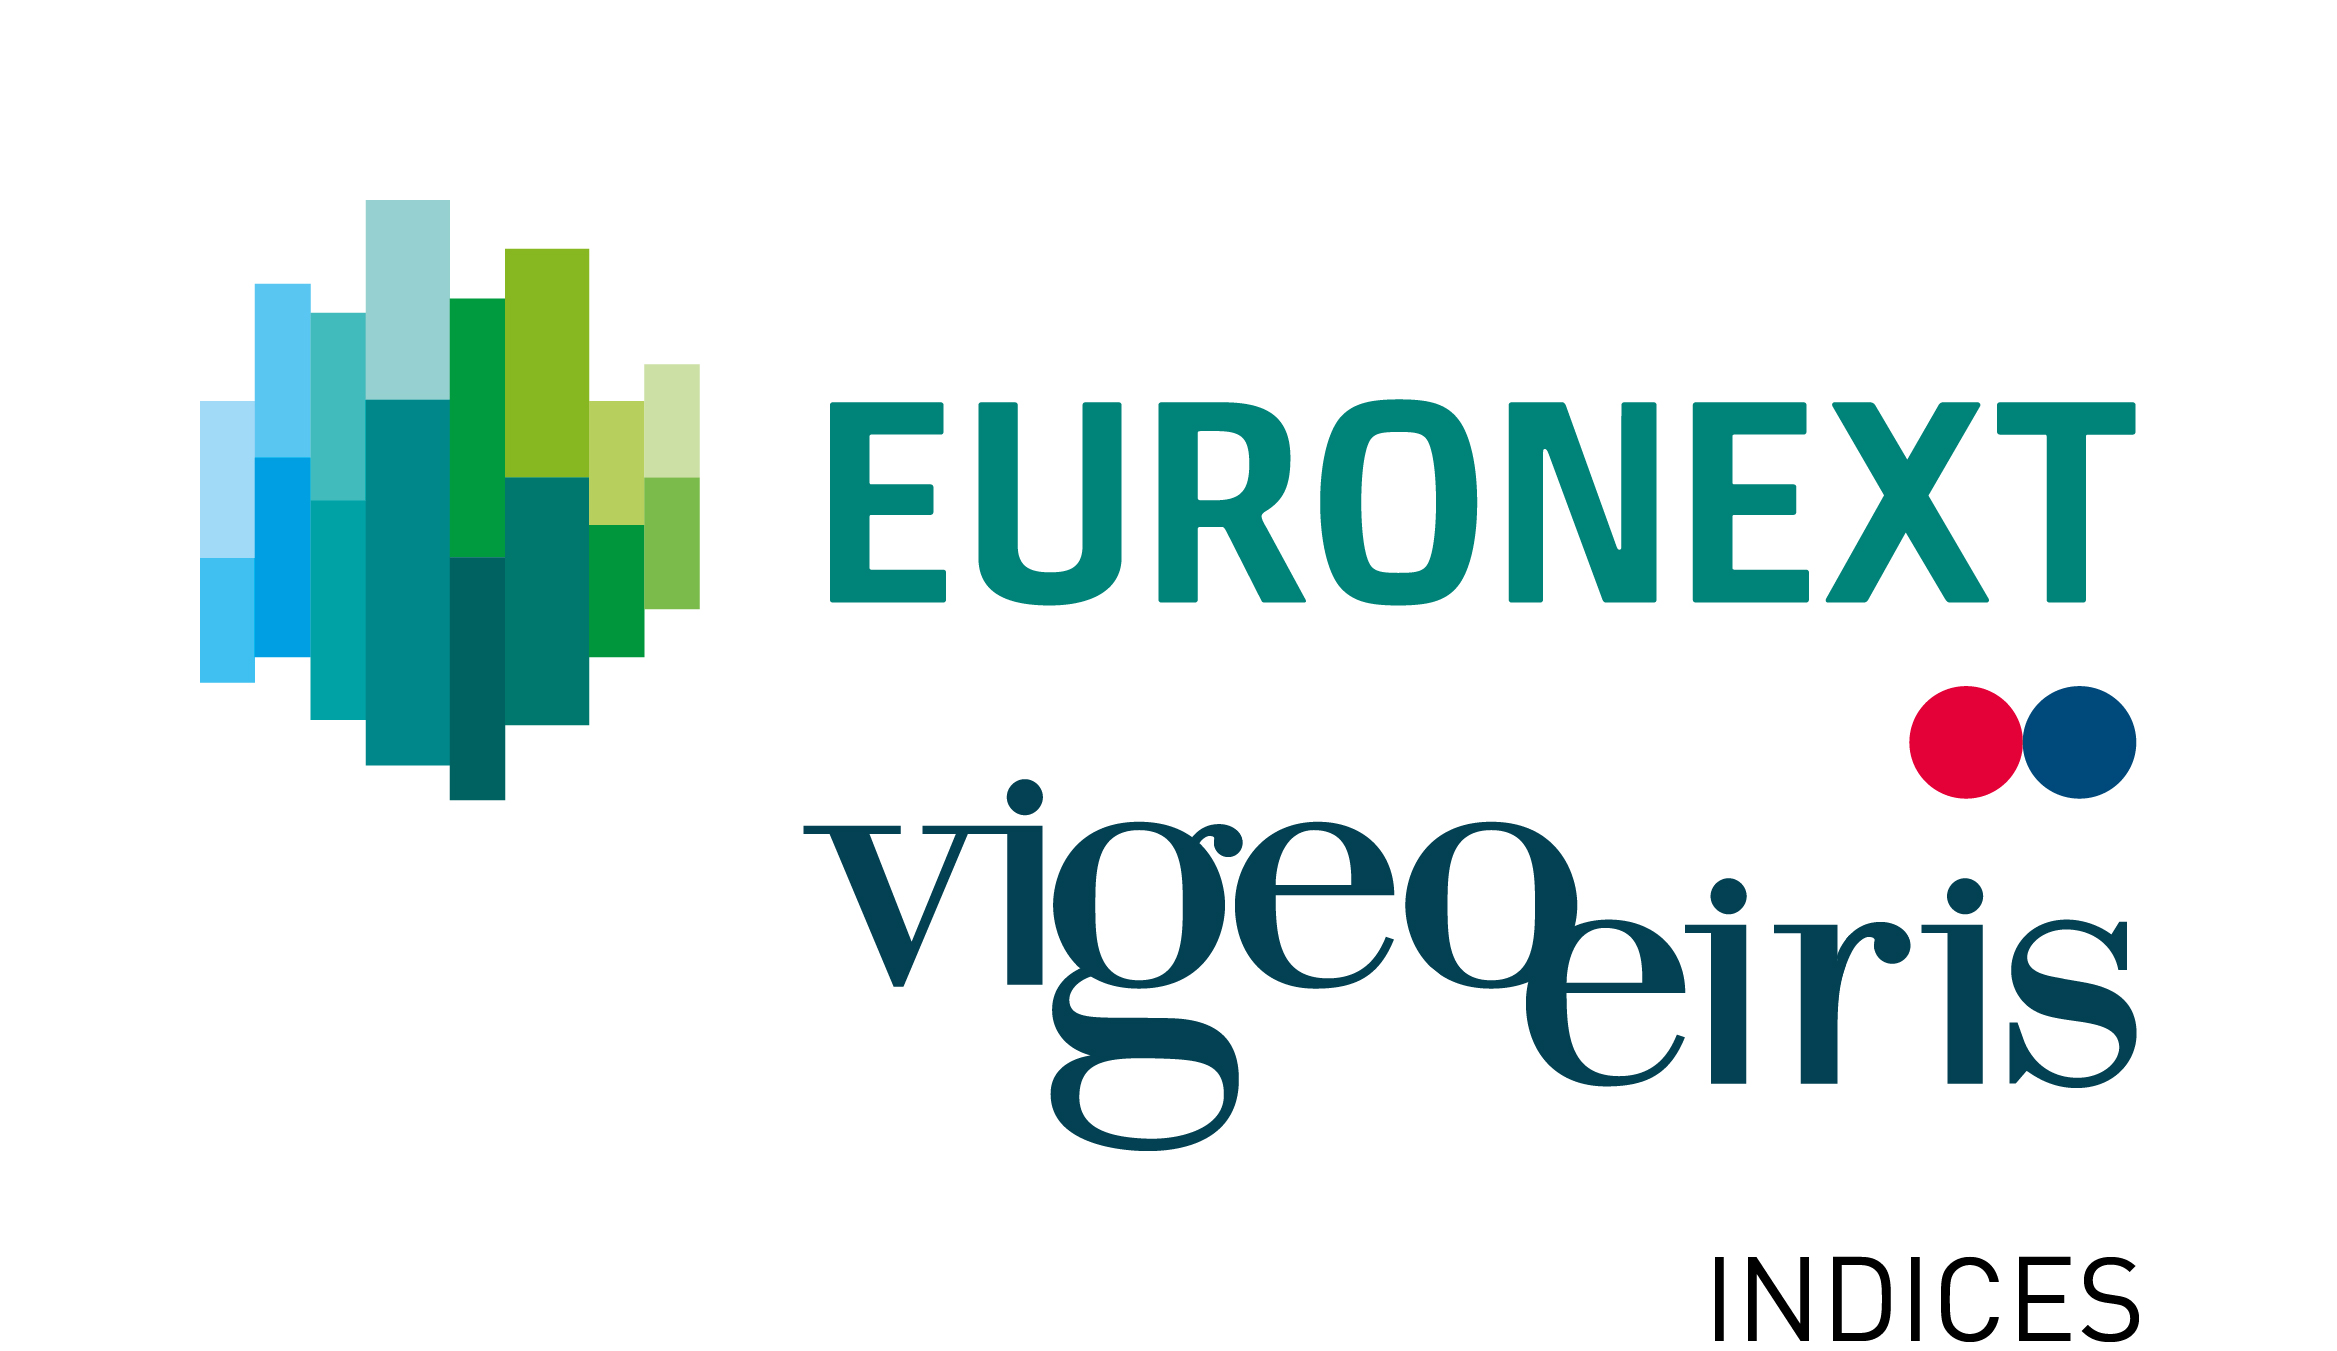 Euronext Vigeo Eiris